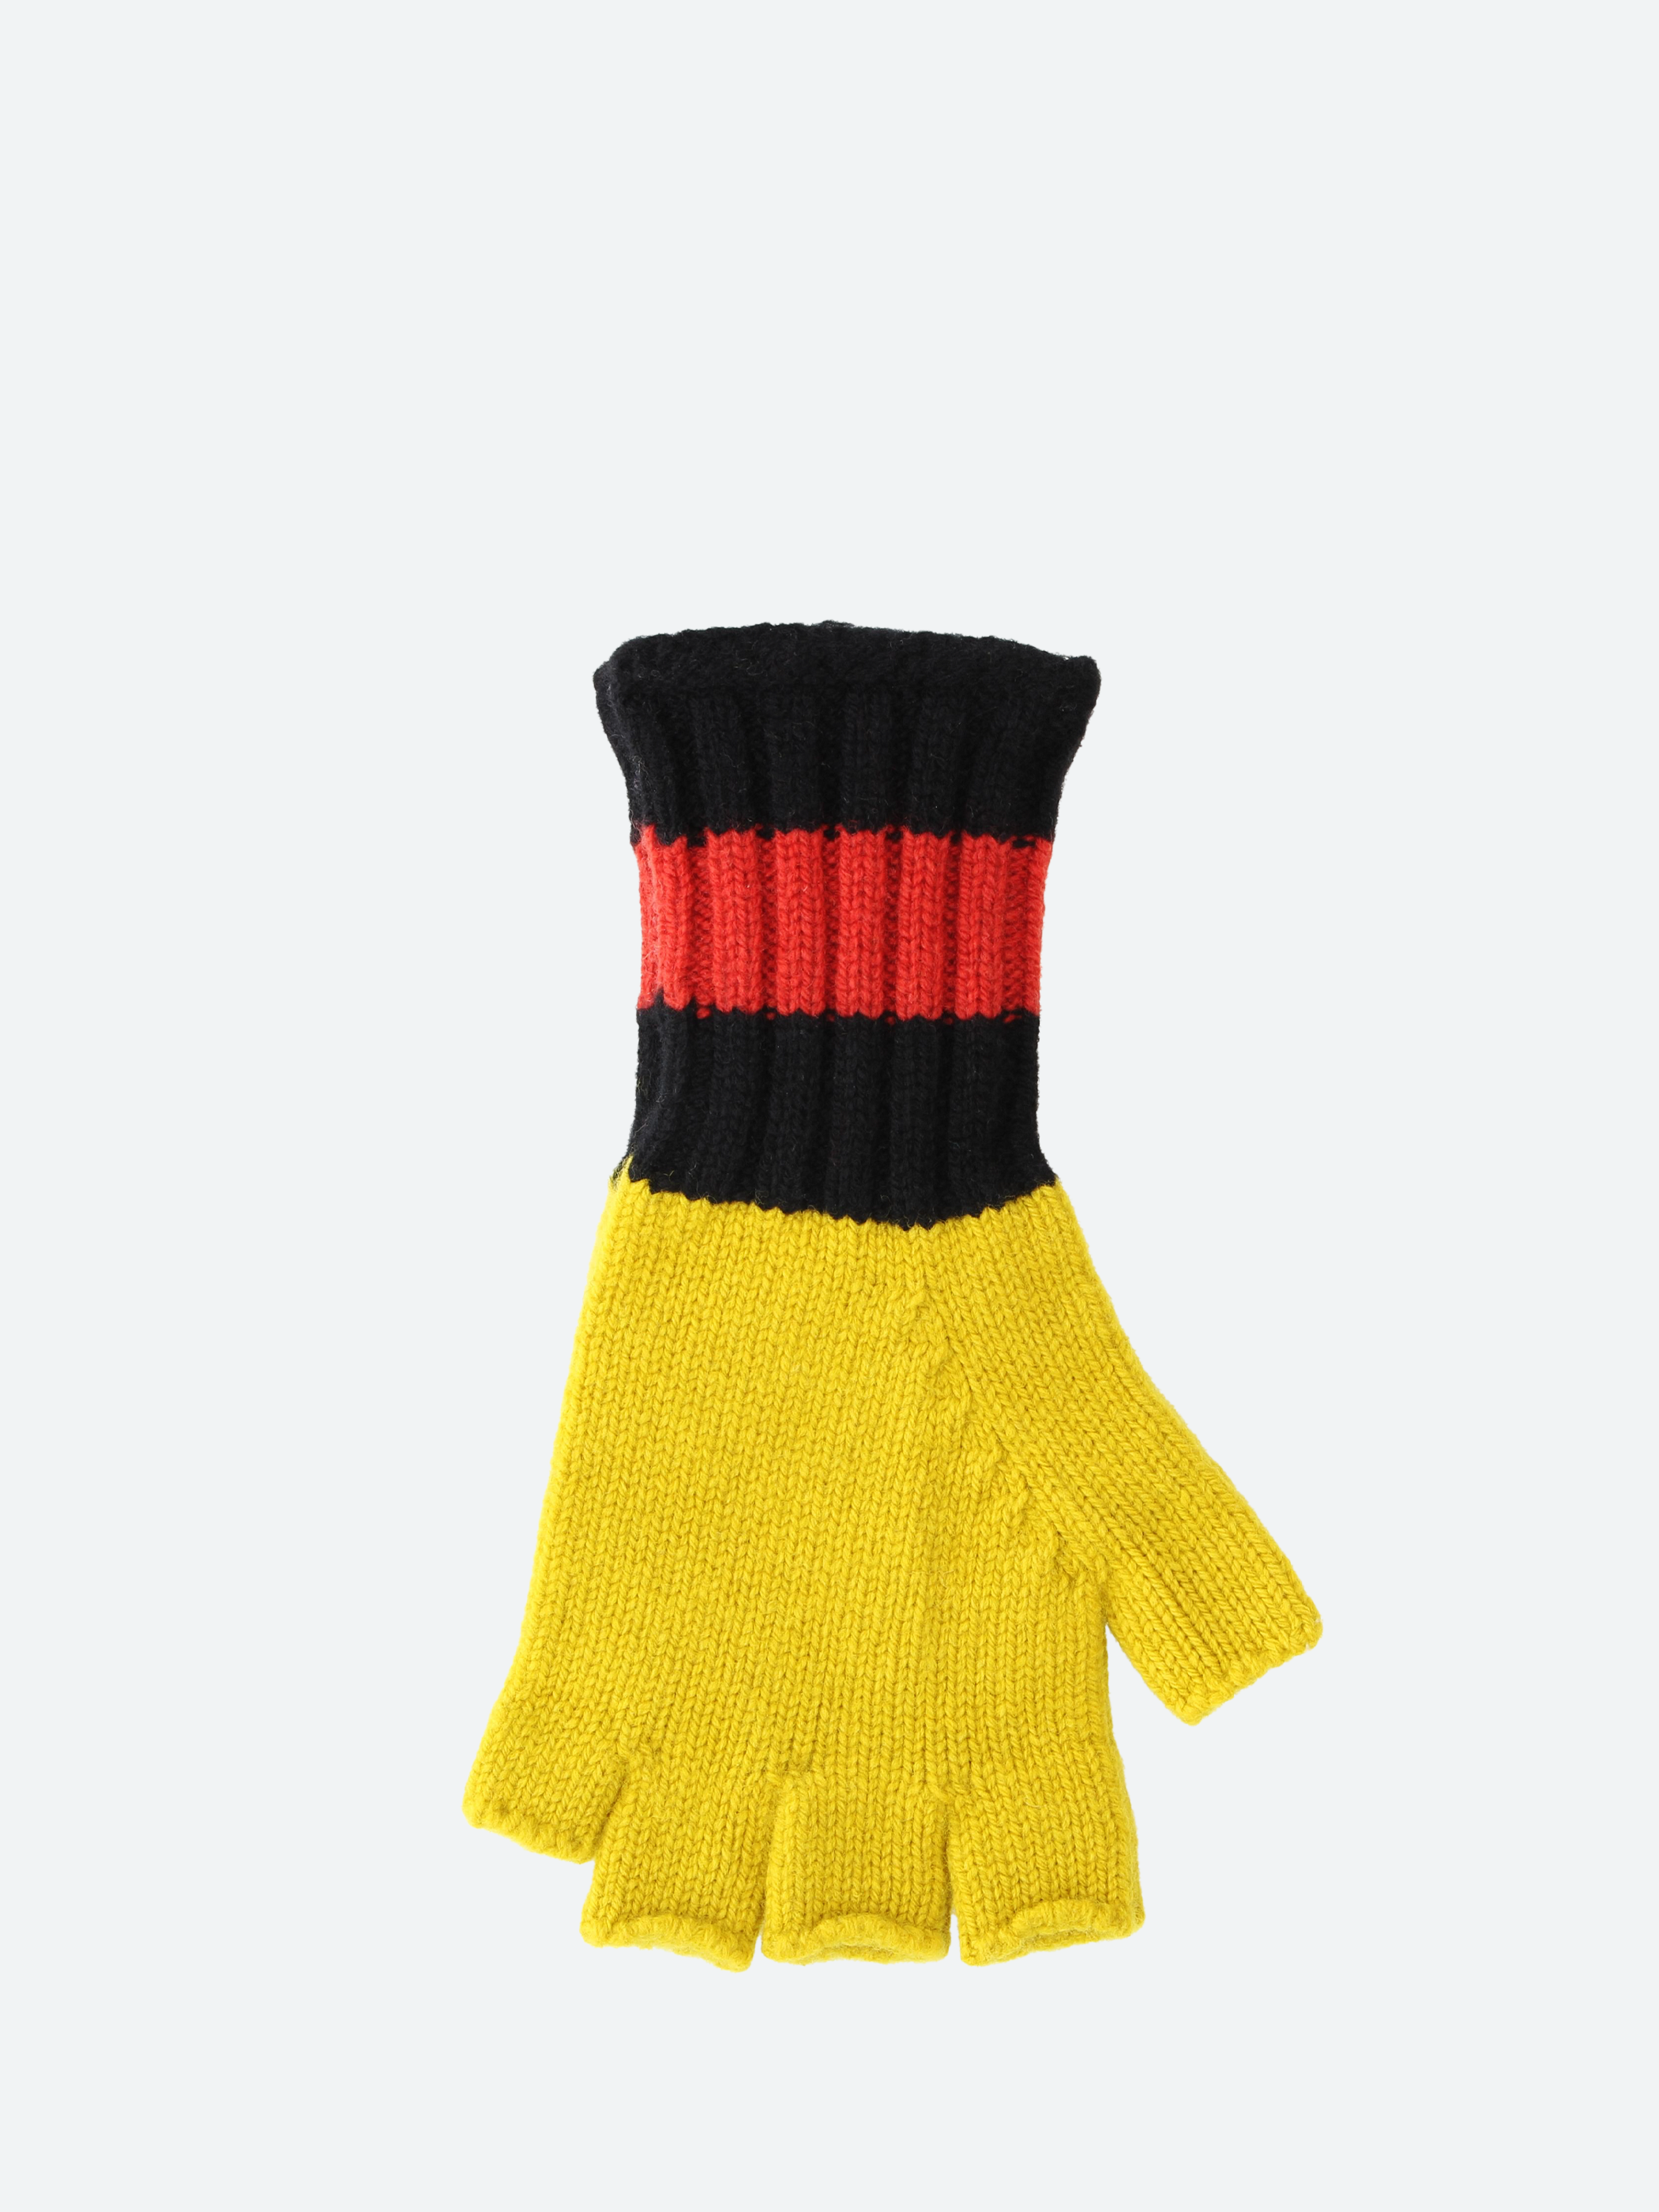 Felted Fingerless Gloves